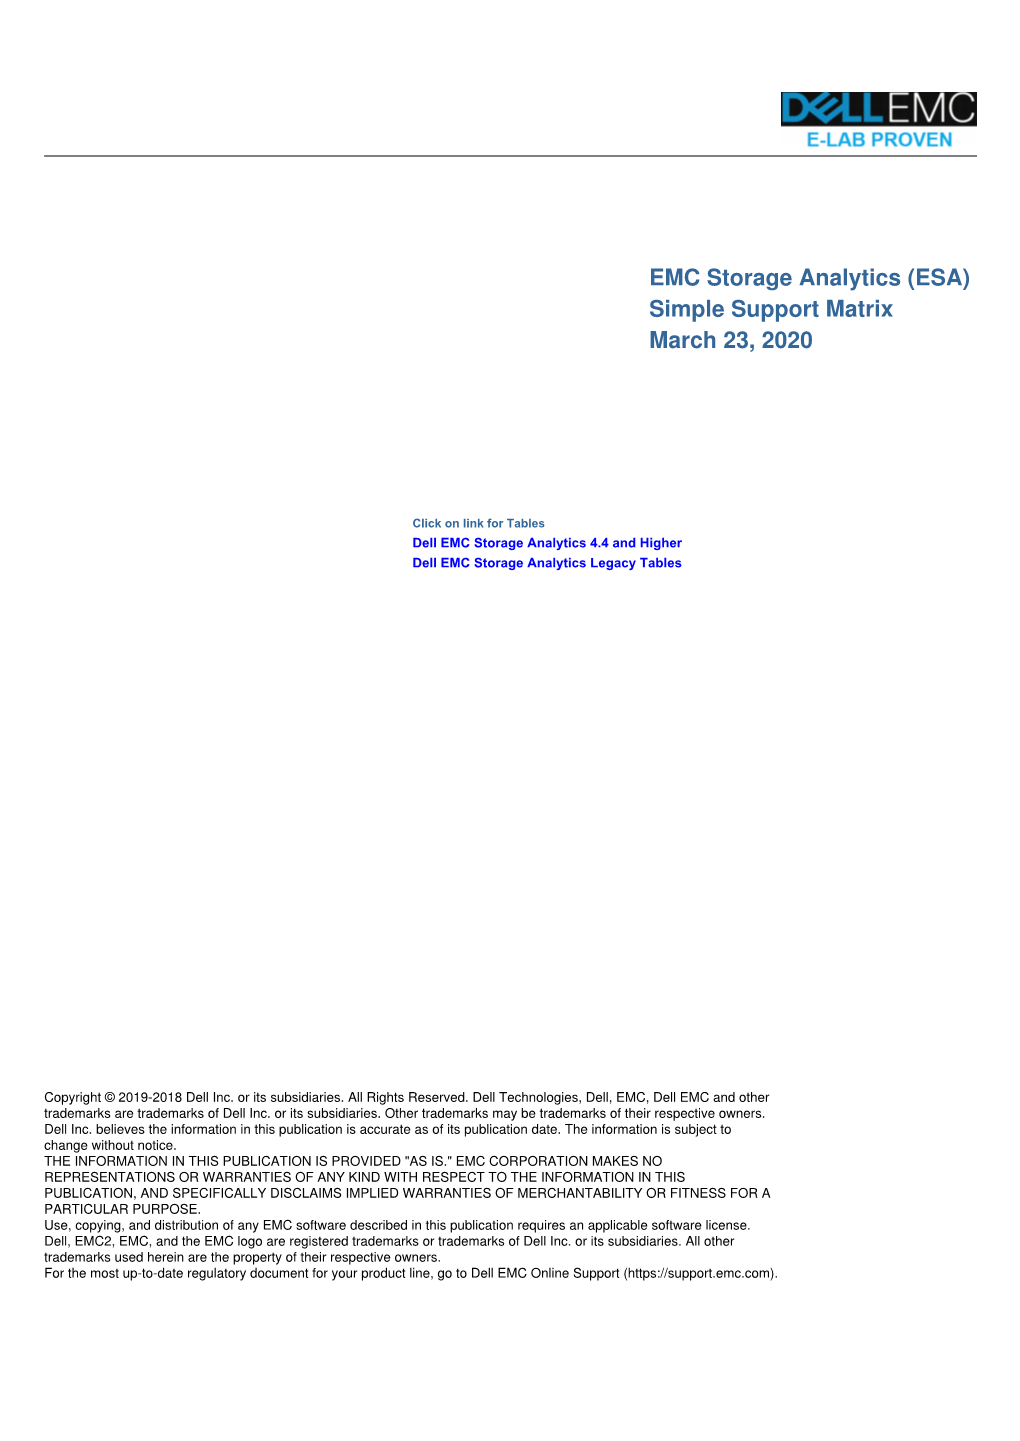 EMC Storage Analytics (ESA) Simple Support Matrix March 23, 2020